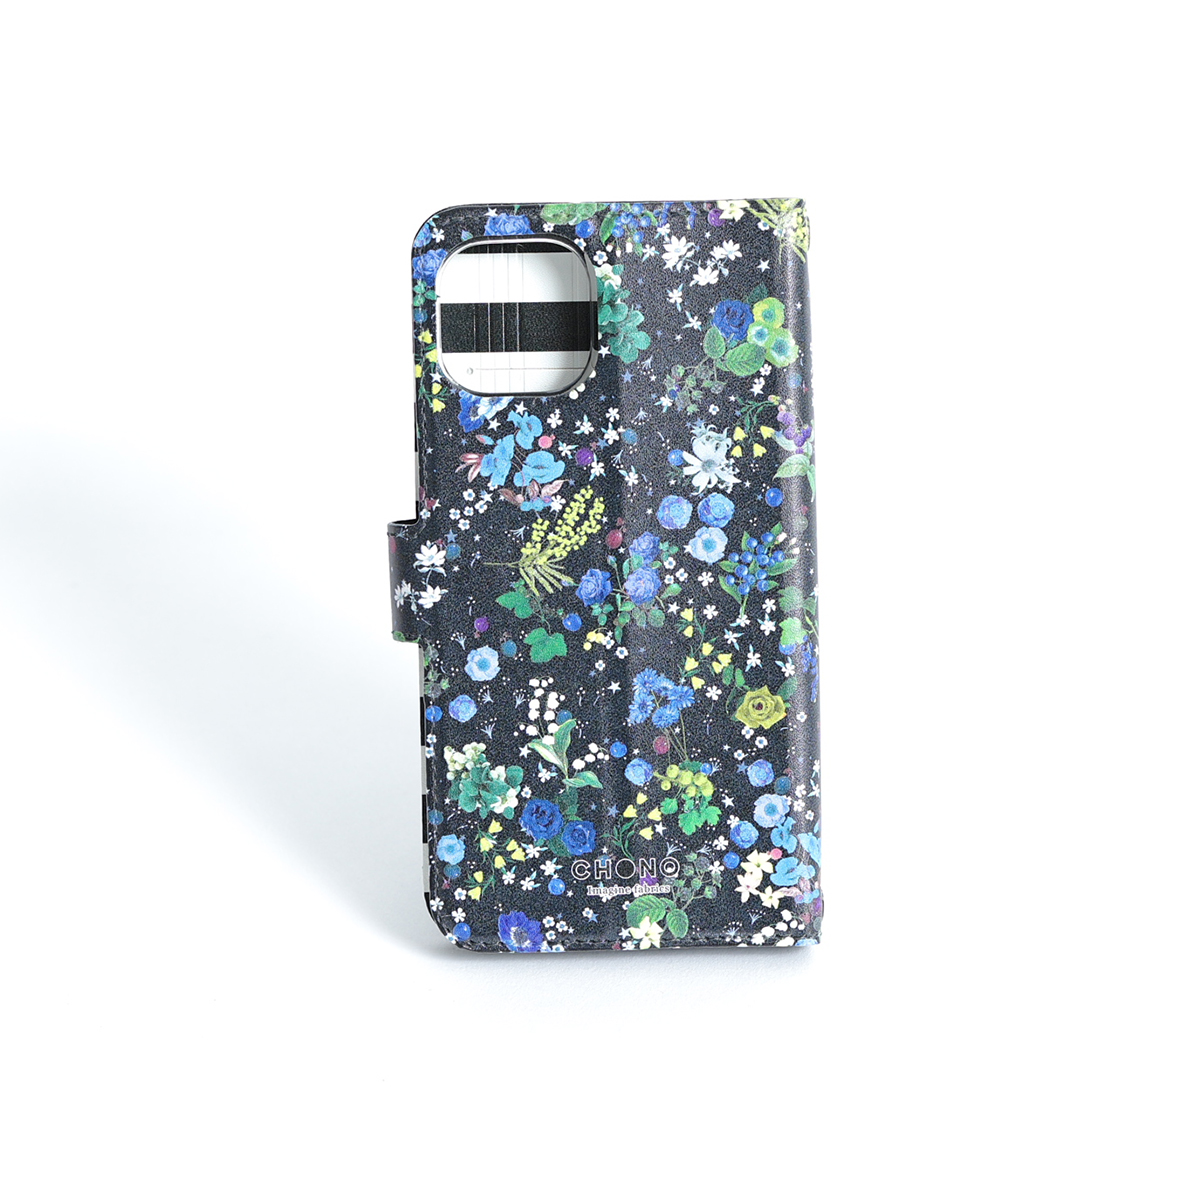 11月下旬お届け予定ご受注商品『Actress flower BLUE』 iphone notebook type case画像